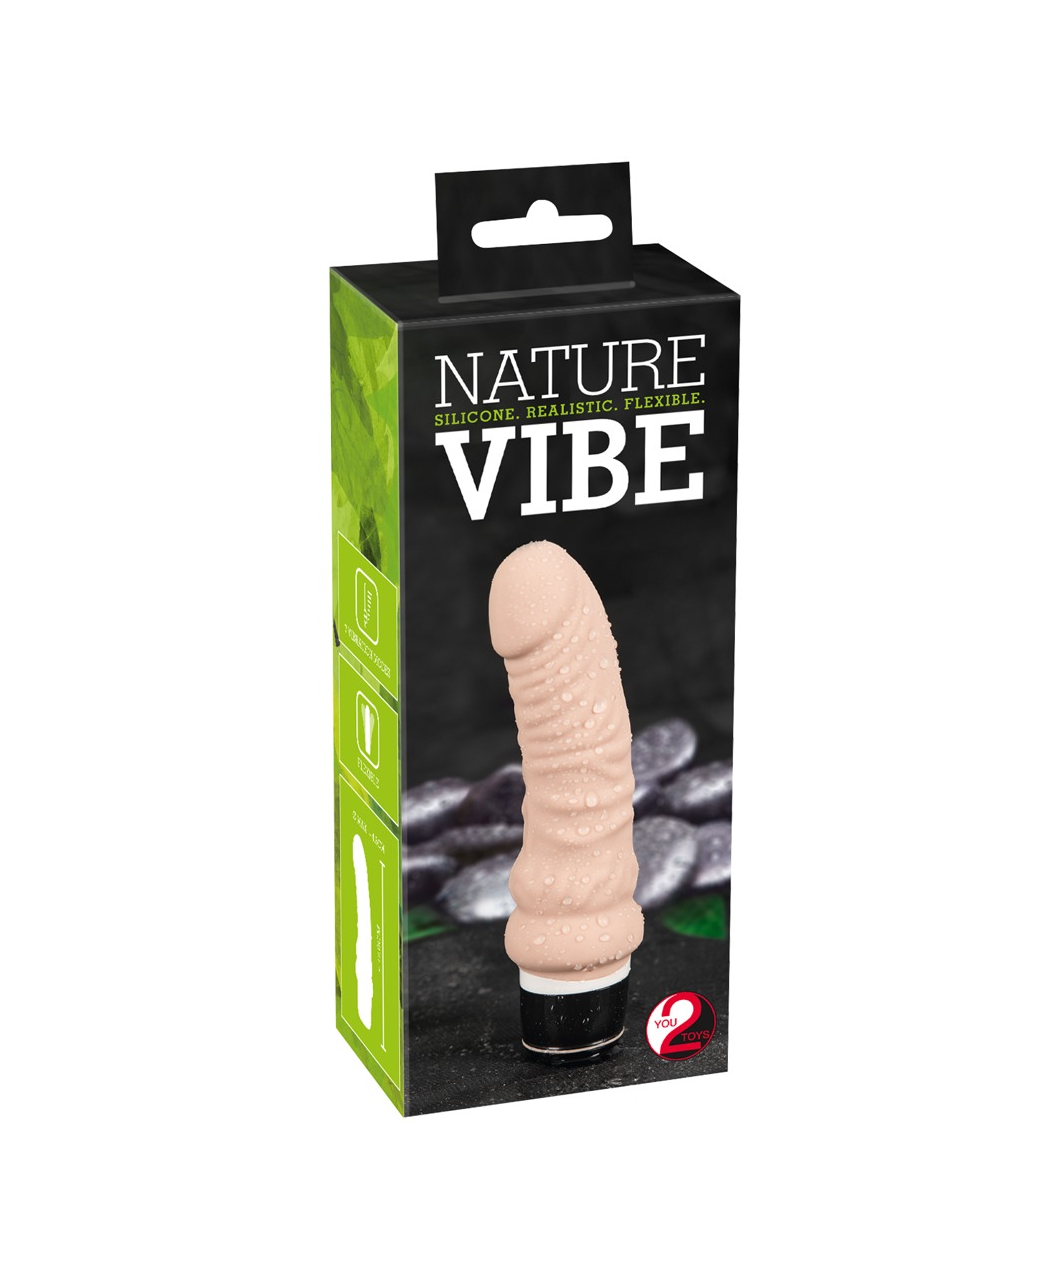 You2Toys Nature Vibe vibrators